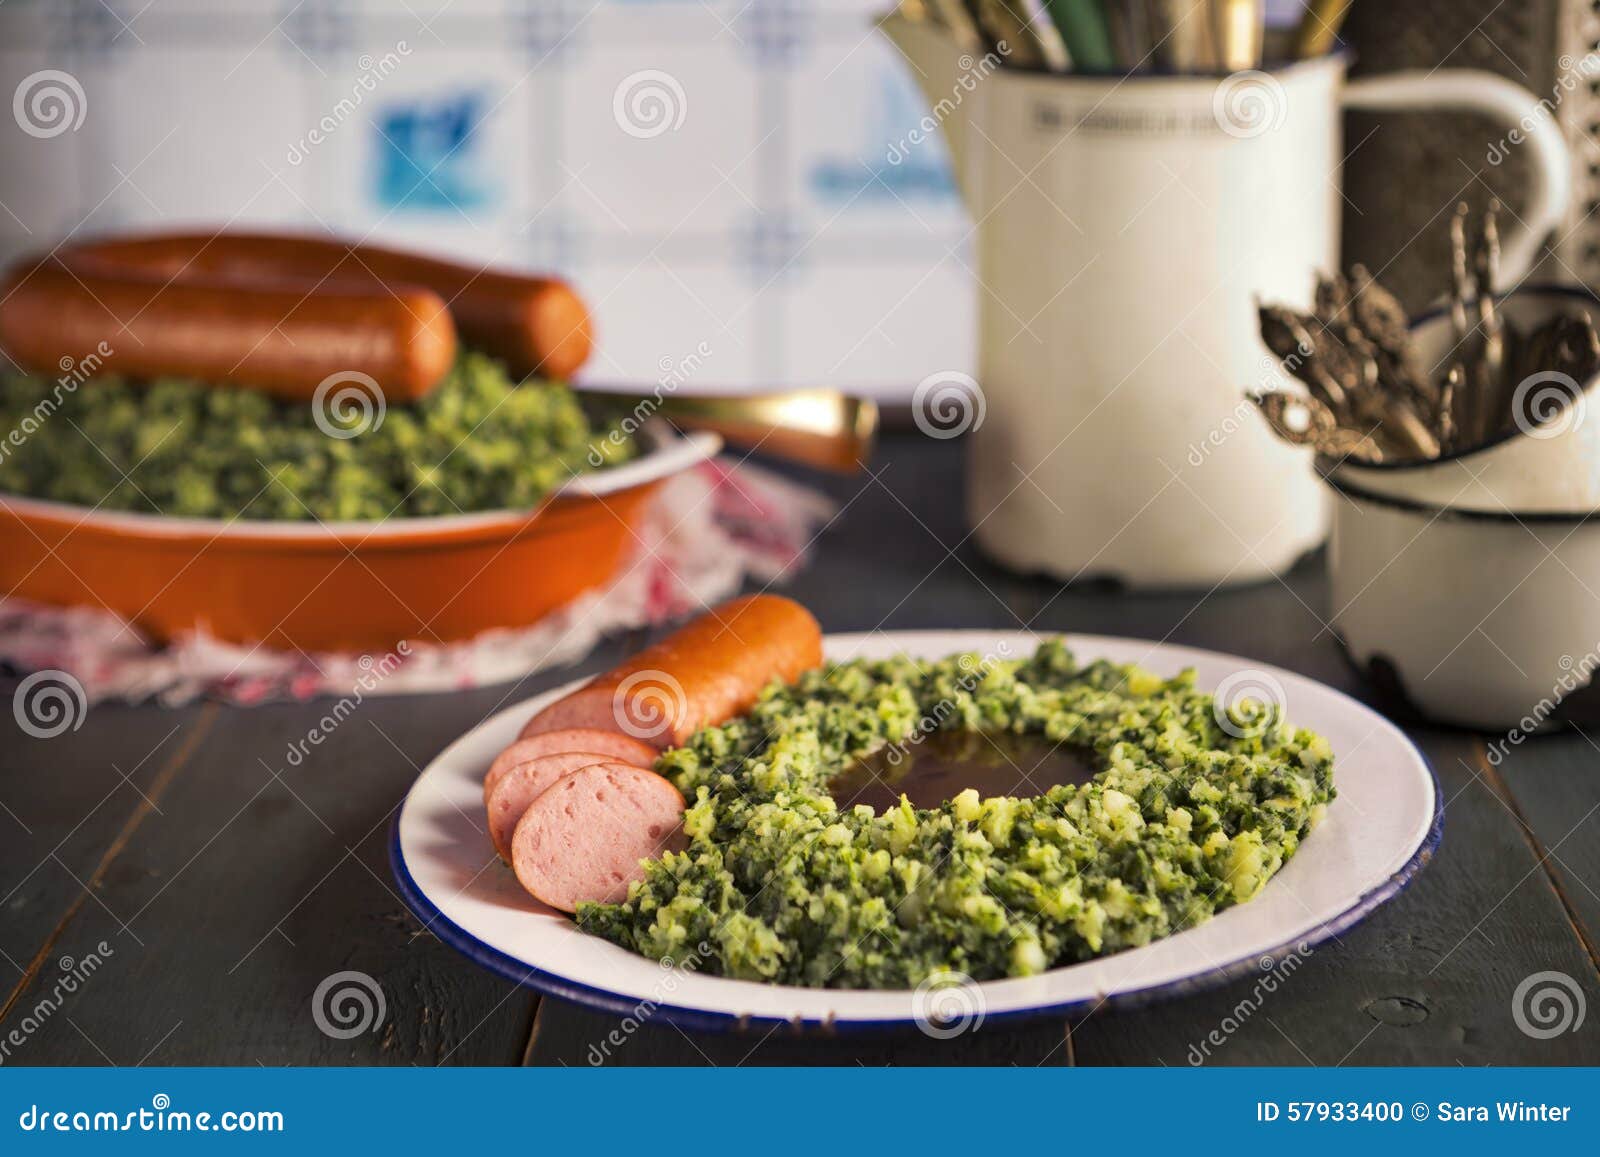 dutch food: kale with smoked sausage or 'boerenkool met worst'